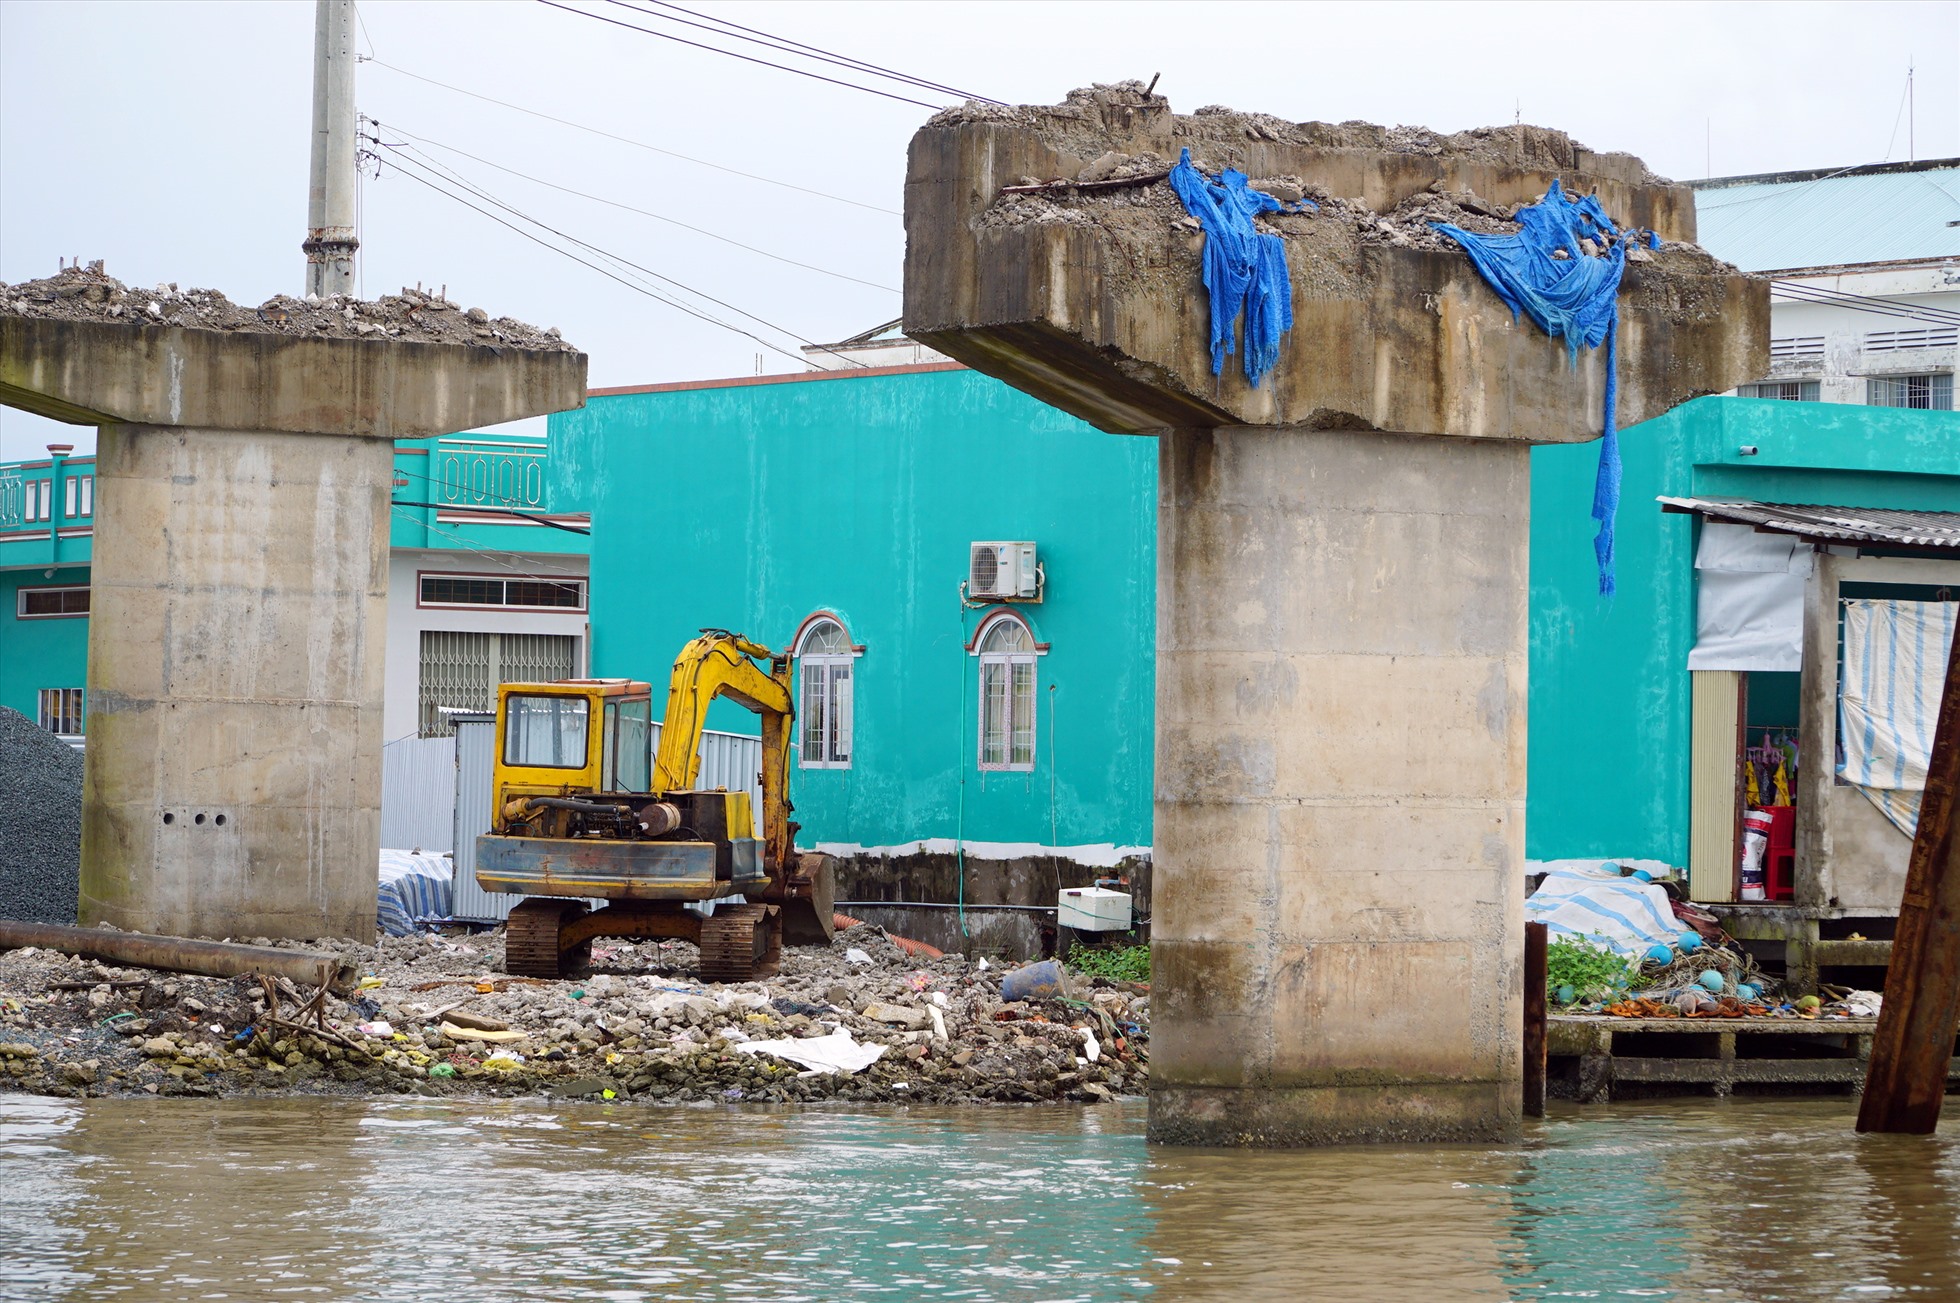 Đảm bảo an toàn trong khi công cầu Cái Đôi Vàm, huyện Phú Tân, tỉnh Cà Mua khi thi công trở lại sau sự cố sập cầu. Ảnh: Nhật Hồ